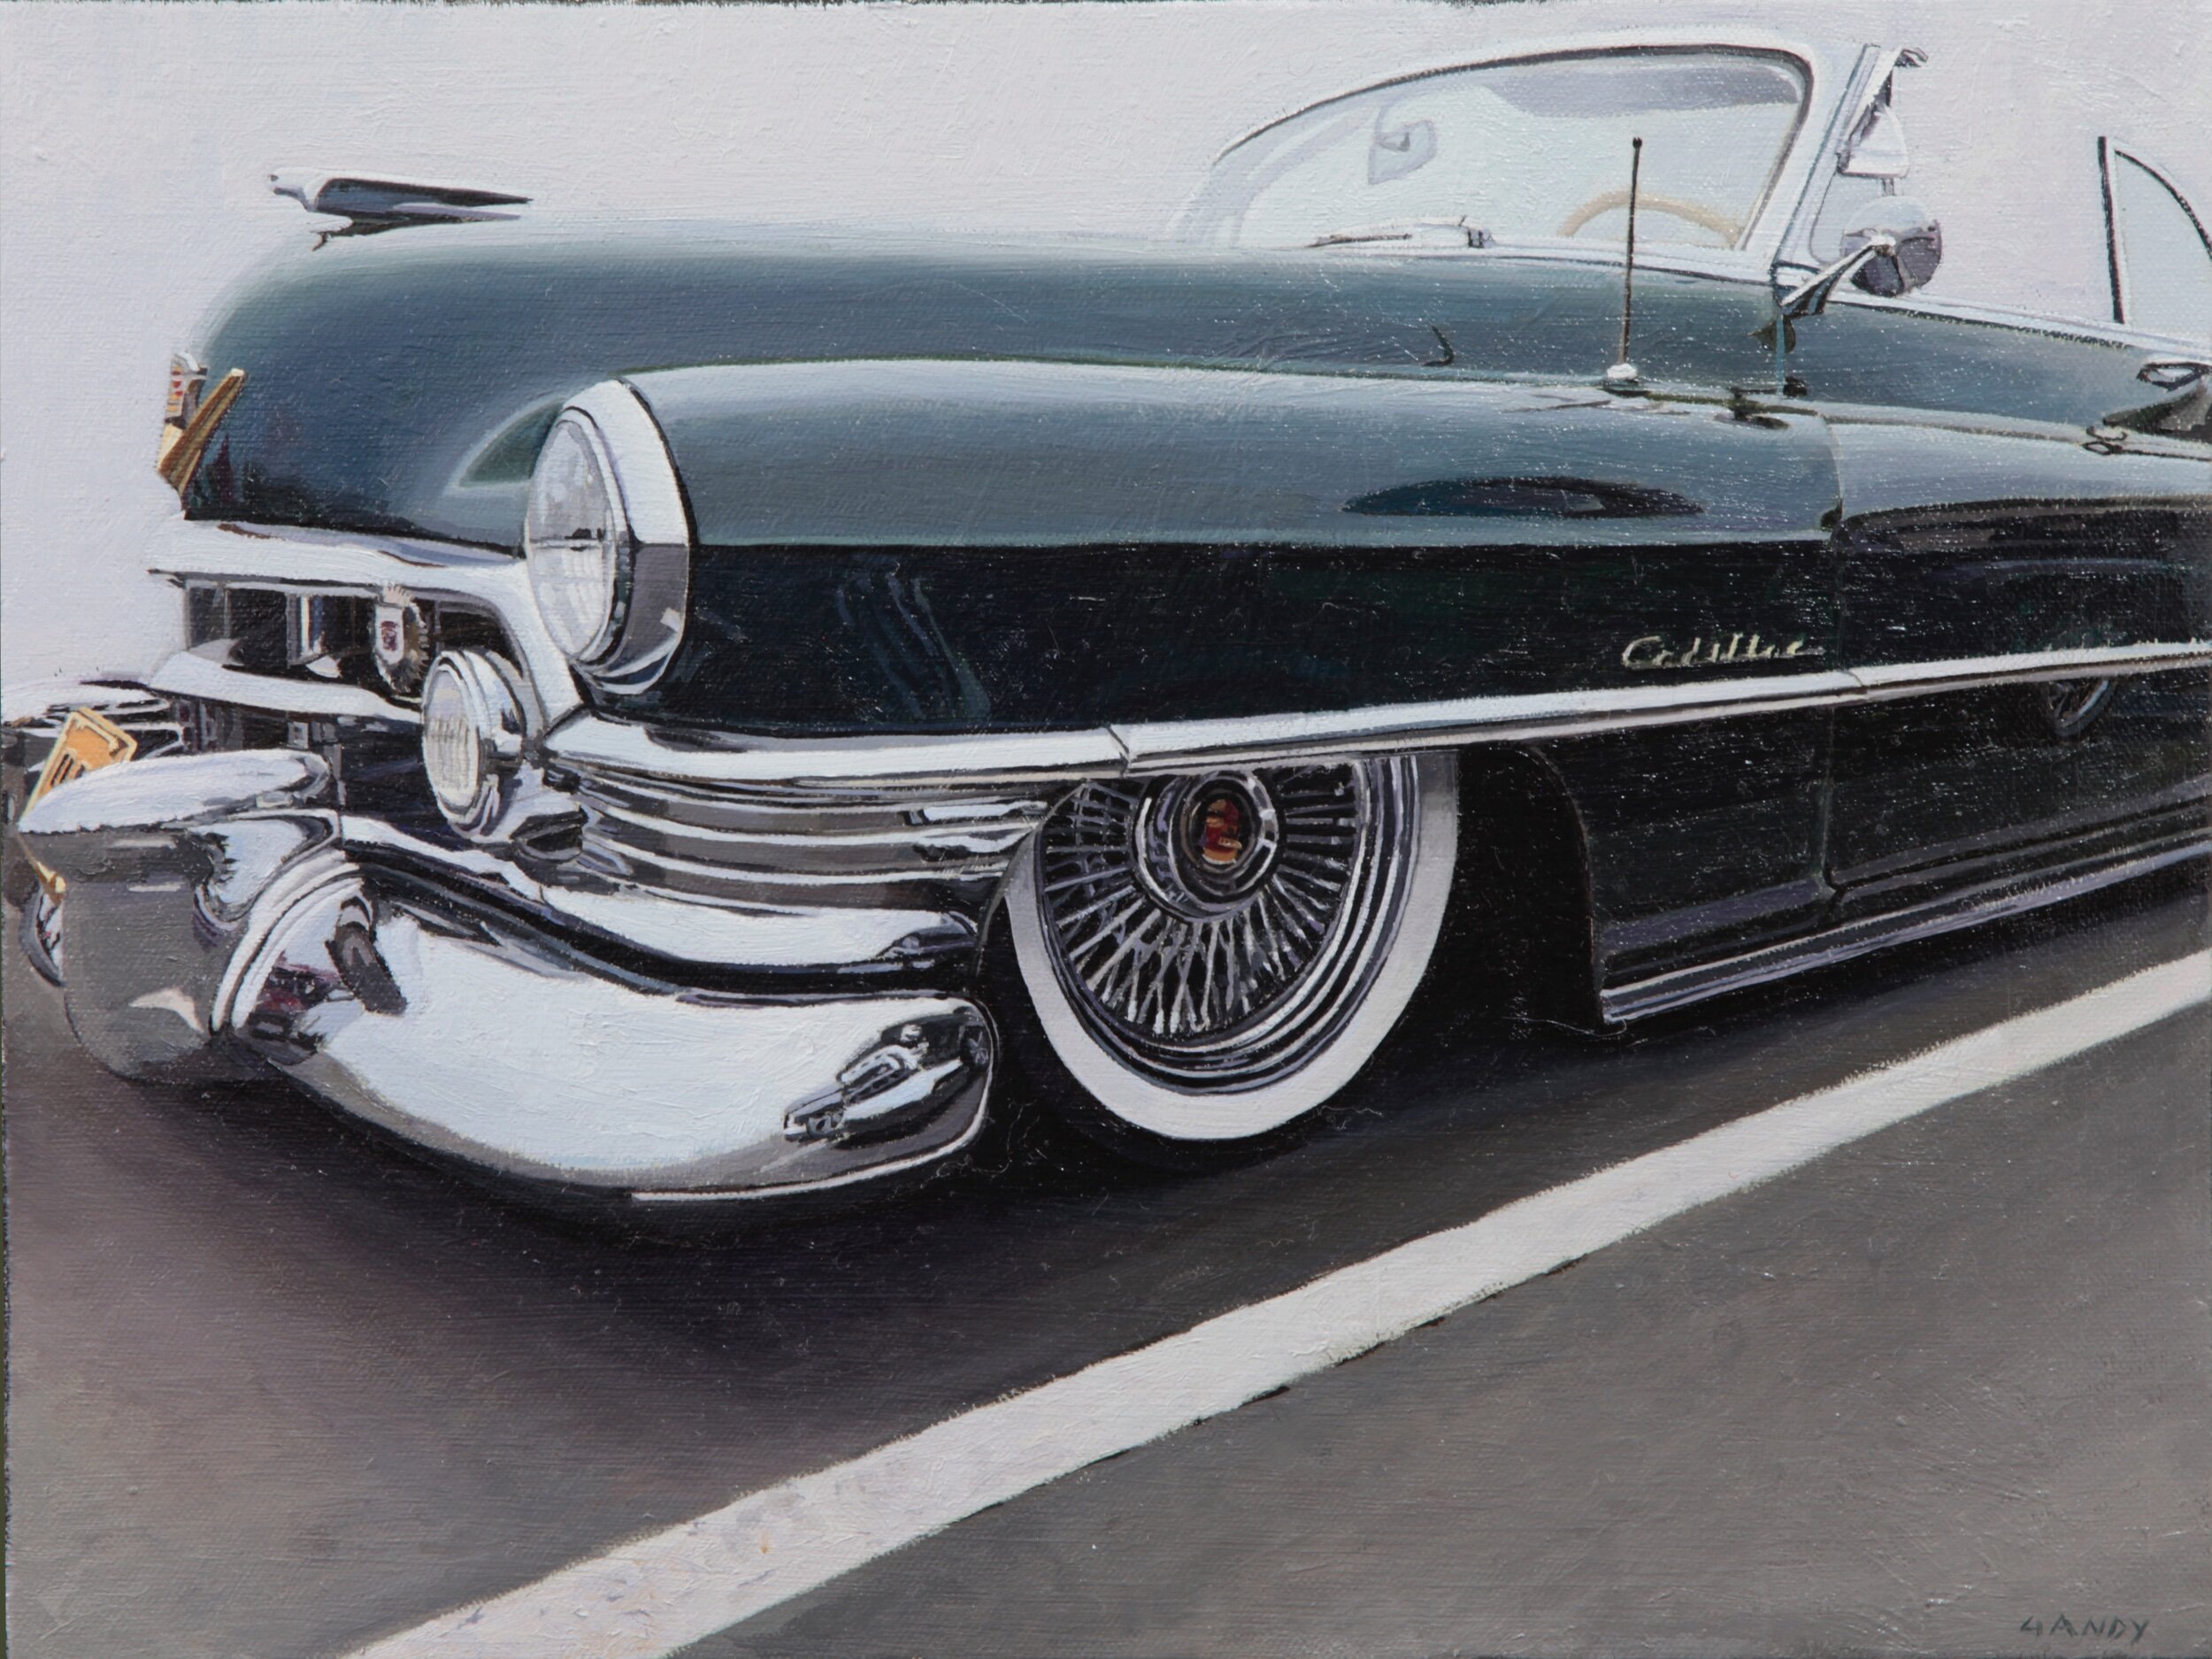 Cadillac by Greg Gandy